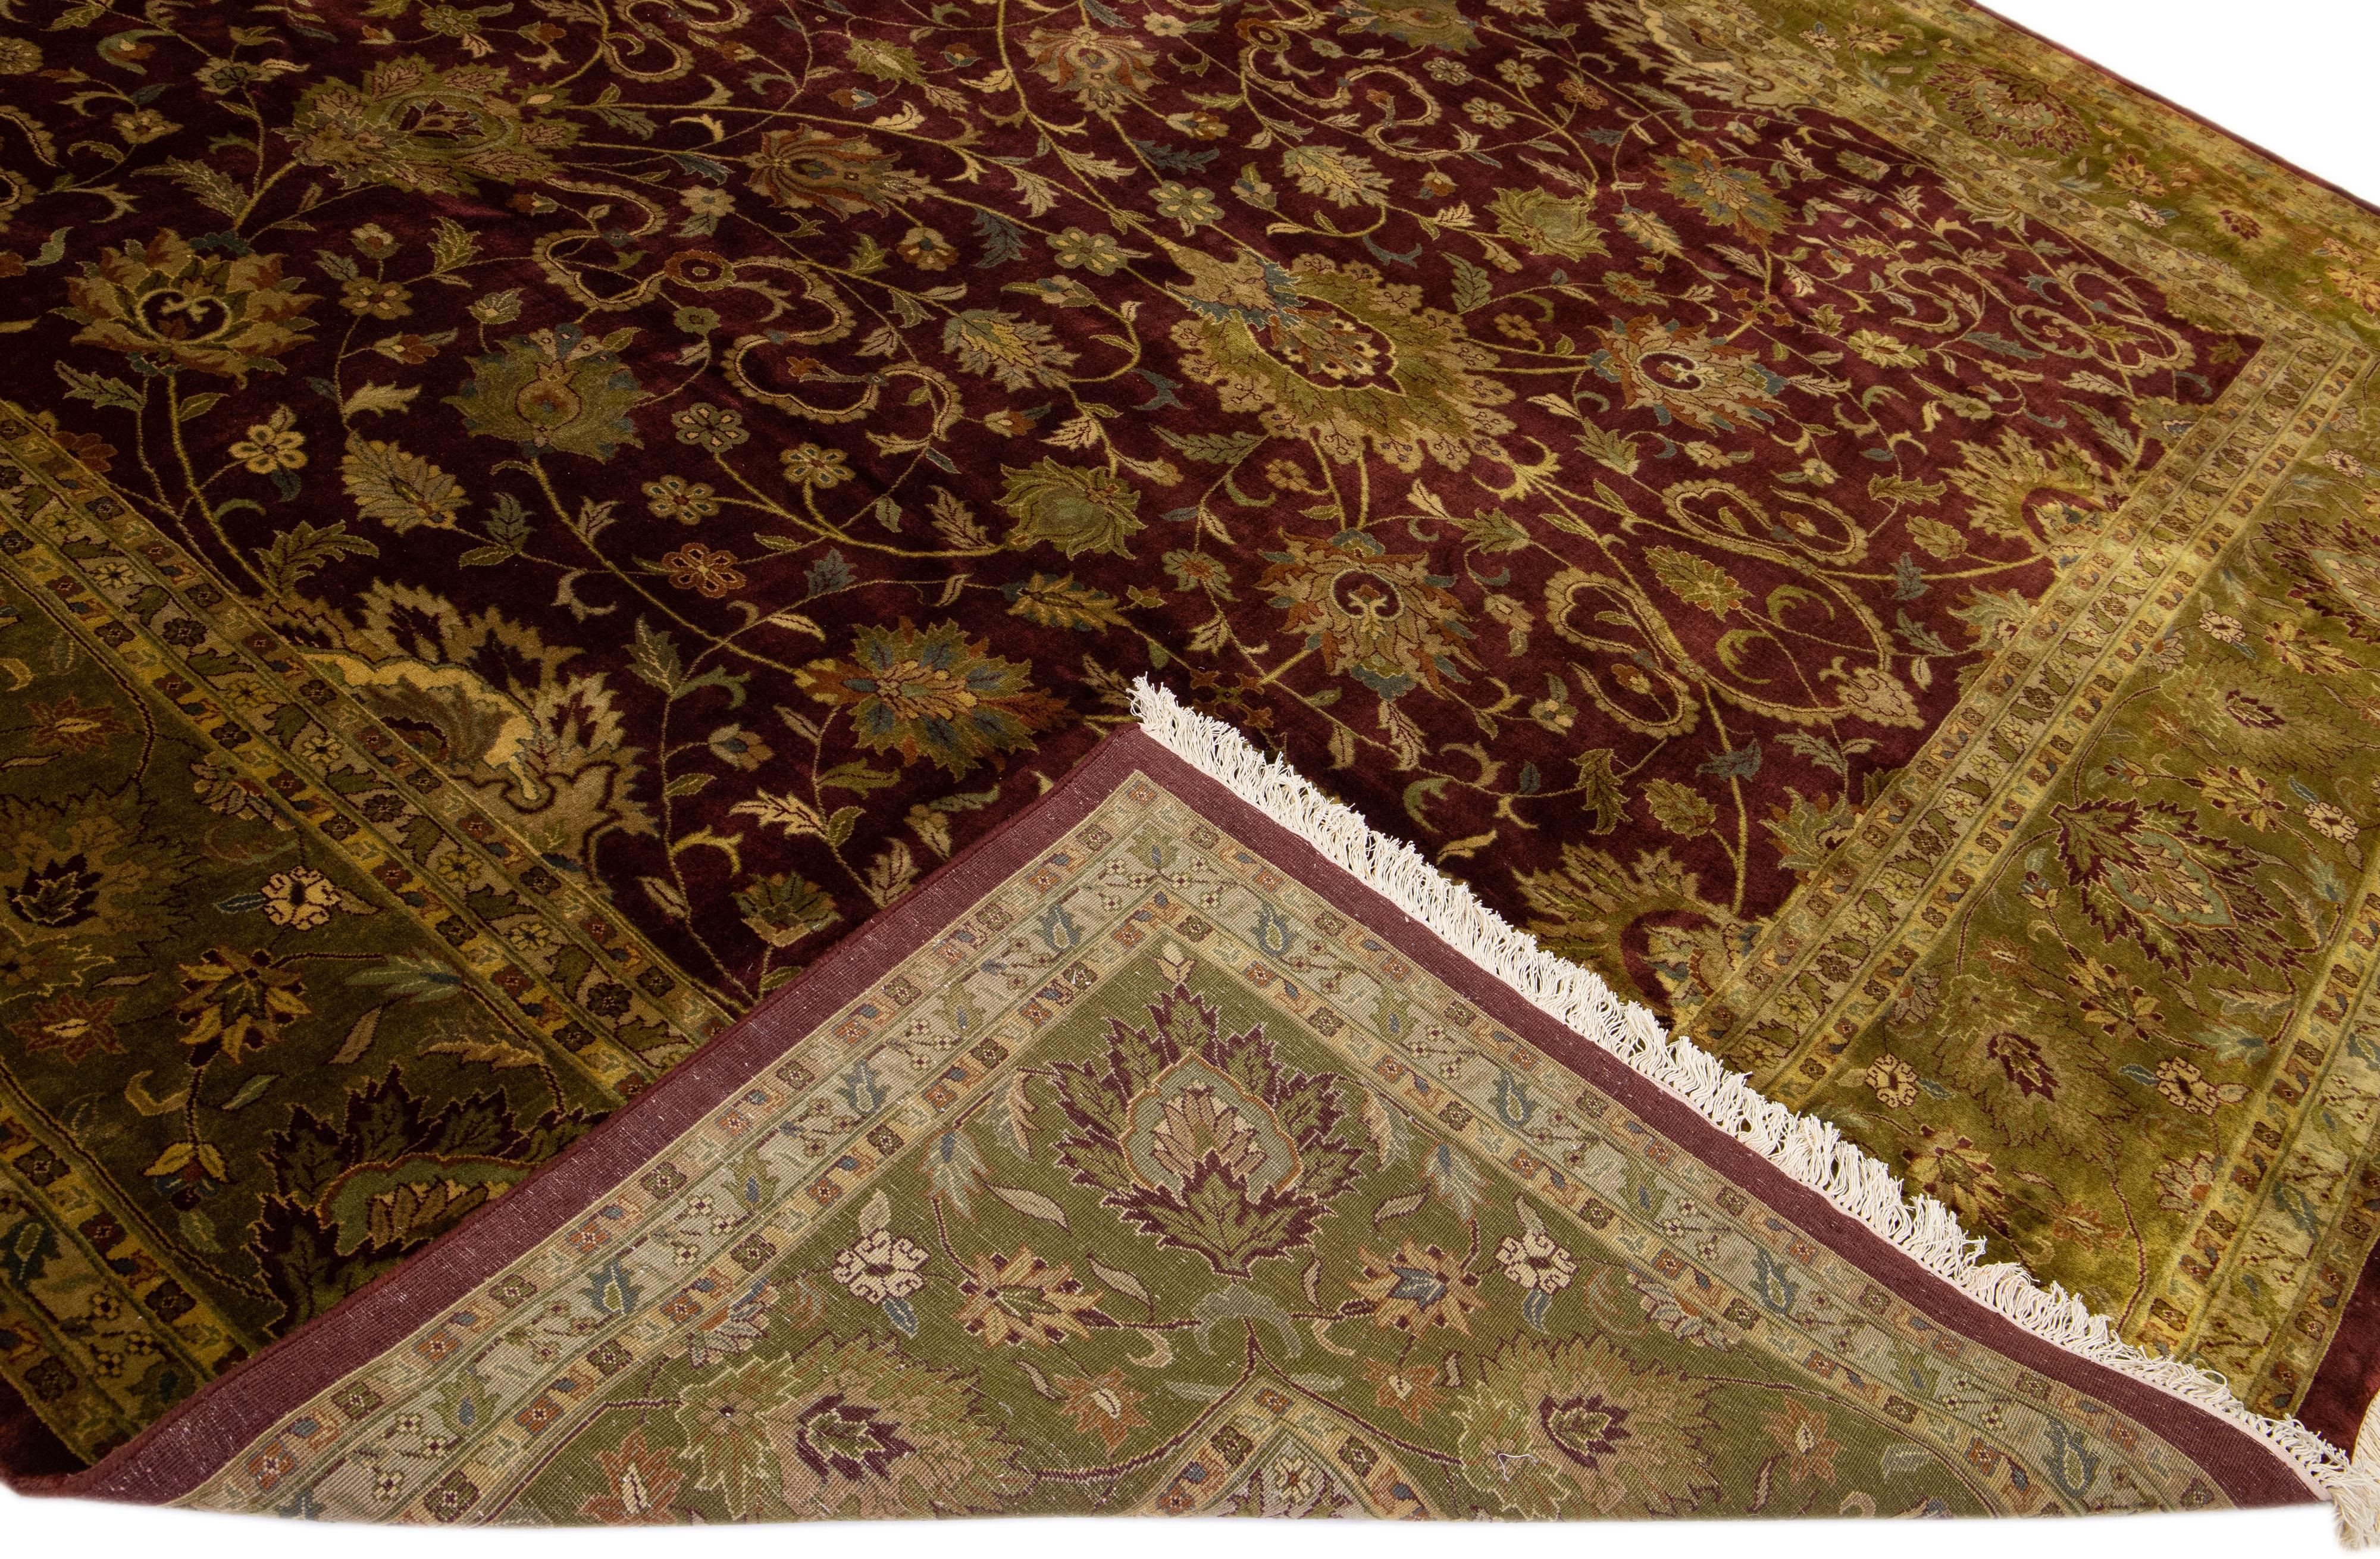 Magnifique tapis antique Agra en laine nouée à la main avec un champ bordeaux. Ce tapis indien a un cadre vert avec des accents multicolores dans un magnifique motif floral.

Ce tapis mesure : 12' x 17'9''.